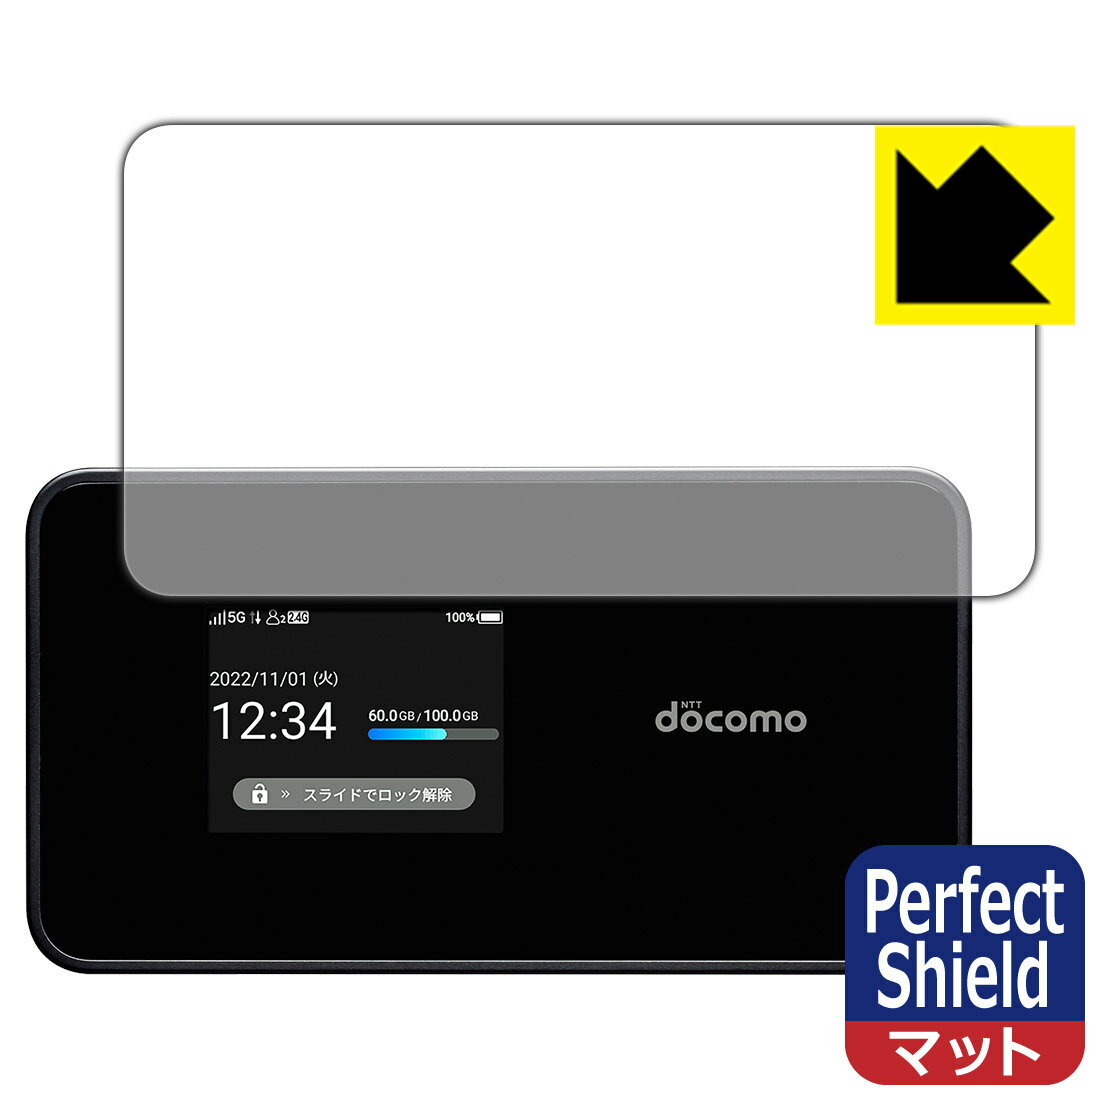 対応機種●対応機種 : SHARP Wi-Fi STATION SH-54C (docomo)専用の保護フィルムです。モバイルルーター本体ではありません。●製品内容 : 画面用フィルム3枚・クリーニングワイプ1個●「Perfect Shield」は画面の反射を抑え、指のすべりもなめらかな指紋や皮脂汚れがつきにくい『アンチグレアタイプ(非光沢)の保護フィルム』●安心の国産素材を使用。日本国内の自社工場で製造し出荷しています。 ★貼り付け失敗交換サービス対象商品★ 国内自社工場製造・発送だからできる 安心の製品保証とサポート ■製品保証 お届けした製品が誤っていたり、不具合があった場合などには、お届けから1ヶ月以内にメールにてお問い合わせください。交換等対応させていただきます。[キャンセル・返品（返金・交換）について] ■■貼り付け失敗時の交換サービス■■貼り付けに失敗しても1回だけ無償交換ができます。(失敗したフィルムをお送りいただき、新品に無償交換します。往復の送料のみお客様にご負担をお願いいたします。詳しくは製品に同封の紙をご確認ください) ■■保護フィルム貼り付け代行サービス■■保護フィルムの貼り付け作業に自信がない方には、PDA工房で貼り付け作業を代行いたします。(PDA工房の保護フィルムのみが対象です。詳しくは製品に同封の紙をご確認ください) Perfect Shield【反射低減】保護フィルム 素材説明 ■画面の映り込みを抑える反射防止タイプ！表面に微細な凹凸を作ることにより、外光を乱反射させギラツキを抑える「アンチグレア加工」がされております。屋外での太陽光の映り込み、屋内でも蛍光灯などの映り込みが気になるシーンが多い方におすすめです。また、指紋がついた場合でも目立ちにくいという特長があります。■防指紋のハードコート！さらさらな指ざわり！指滑りはさらさらな使用感でストレスのない操作・入力が可能です。ハードコート加工がされており、キズや擦れに強くなっています。簡単にキズがつかず長くご利用いただけます。反射防止のアンチグレア加工で指紋が目立ちにくい上、表面は防汚コーティングがされており、皮脂や汚れがつきにくく、また、落ちやすくなっています。■気泡の入りにくい特殊な自己吸着タイプ接着面は気泡の入りにくい特殊な自己吸着タイプです。素材に柔軟性があり、貼り付け作業も簡単にできます。また、はがすときにガラス製フィルムのように割れてしまうことはありません。貼り直しが何度でもできるので、正しい位置へ貼り付けられるまでやり直すことができます。■安心の日本製最高級グレードの国産素材を日本国内の弊社工場で加工している完全な Made in Japan です。安心の品質をお届けします。 【ポスト投函送料無料】商品は【ポスト投函発送 (追跡可能メール便)】で発送します。お急ぎ、配達日時を指定されたい方は以下のクーポンを同時購入ください。【お急ぎ便クーポン】　プラス110円(税込)で速達扱いでの発送。お届けはポストへの投函となります。【配達日時指定クーポン】　プラス550円(税込)で配達日時を指定し、宅配便で発送させていただきます。【お急ぎ便クーポン】はこちらをクリック【配達日時指定クーポン】はこちらをクリック